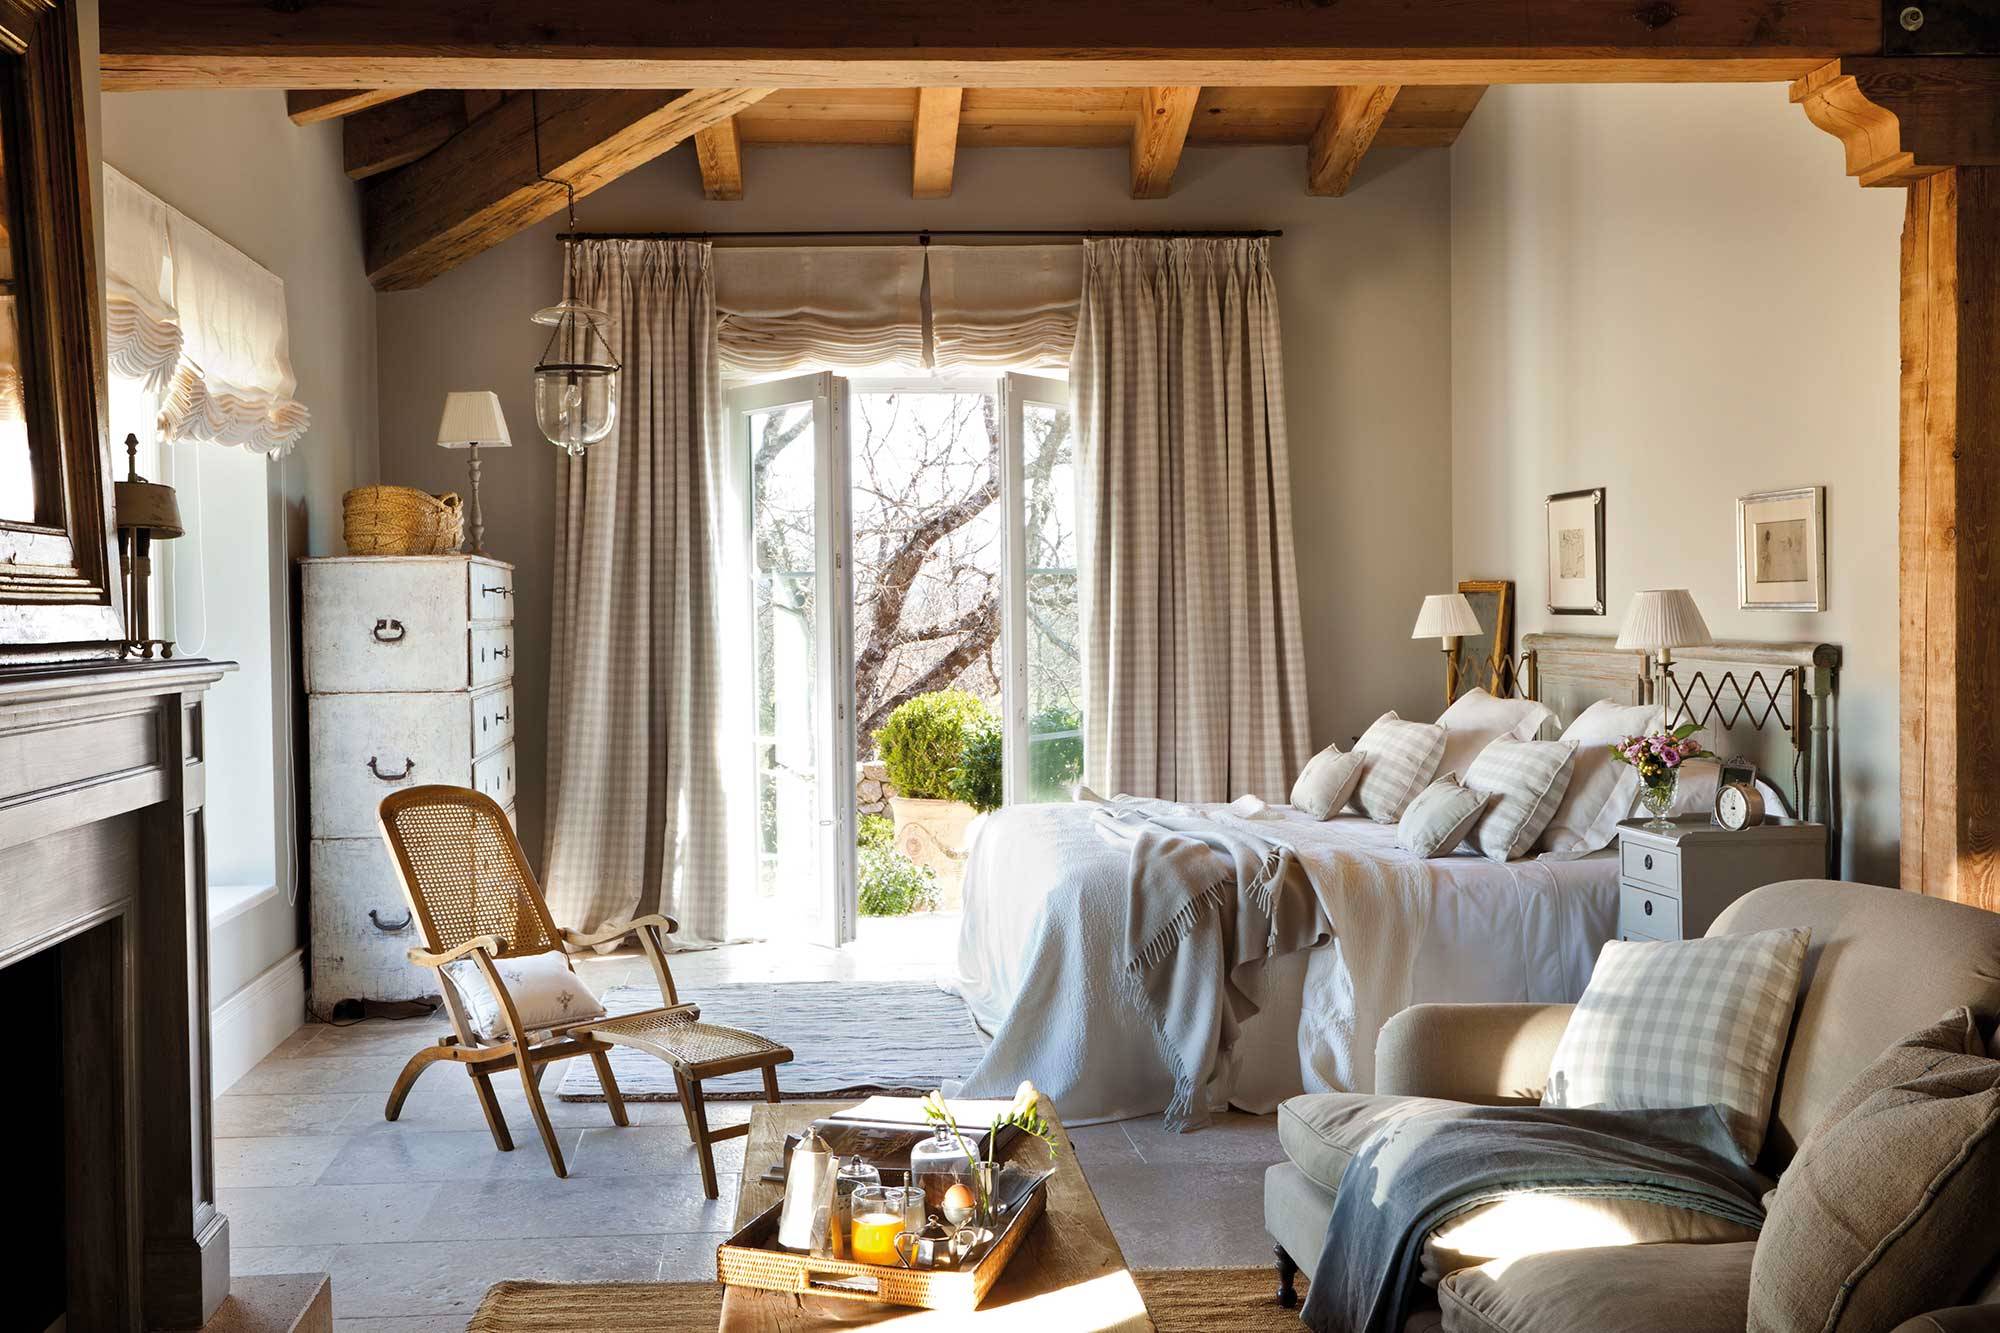 Dormitorio con vigas, ropa de cama y chimenea estilo vintage.